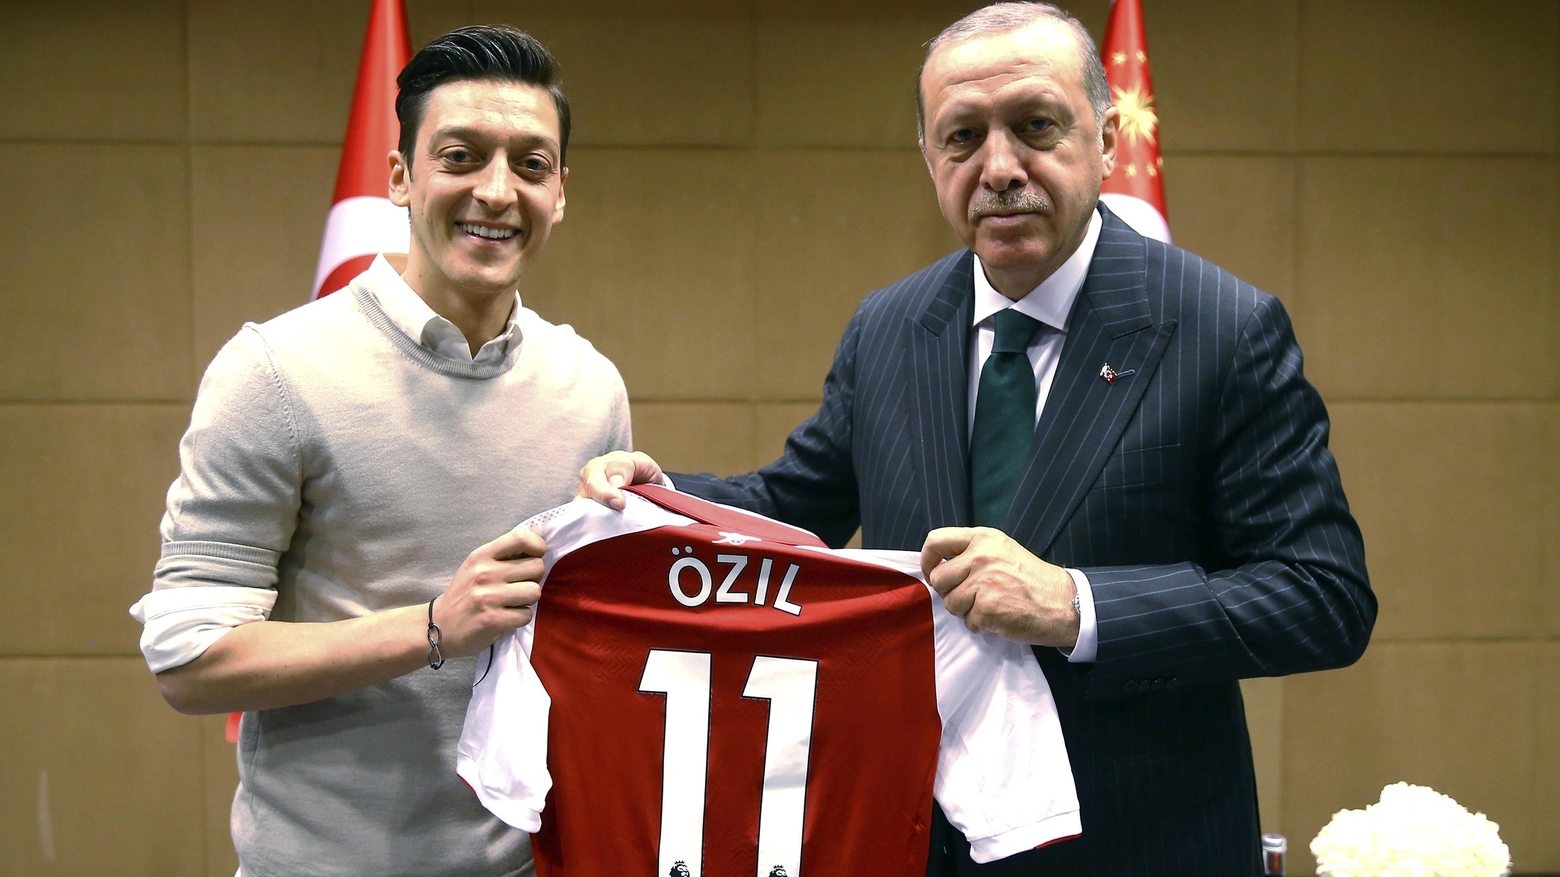 La foto tra Ozil e Erdogan che ha scatenato la polemica (LaPresse)